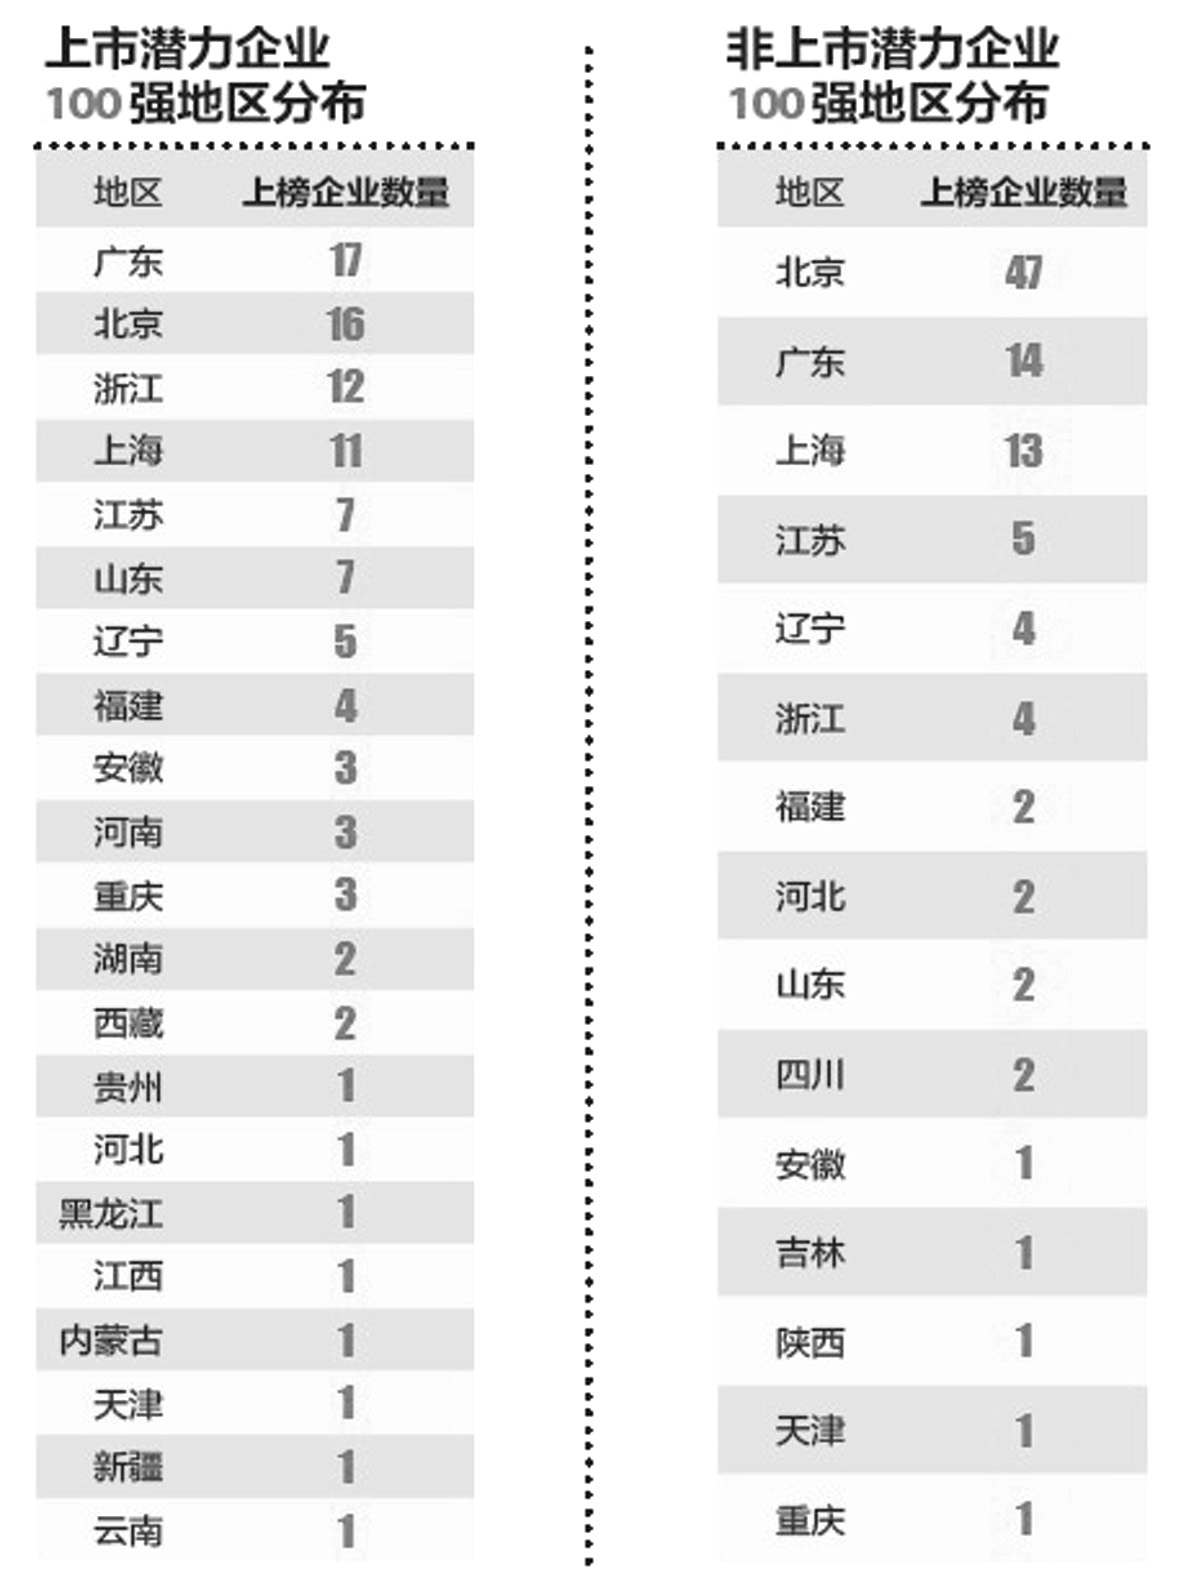 福布斯中国最具潜力中小企业榜出炉(图)-海思科